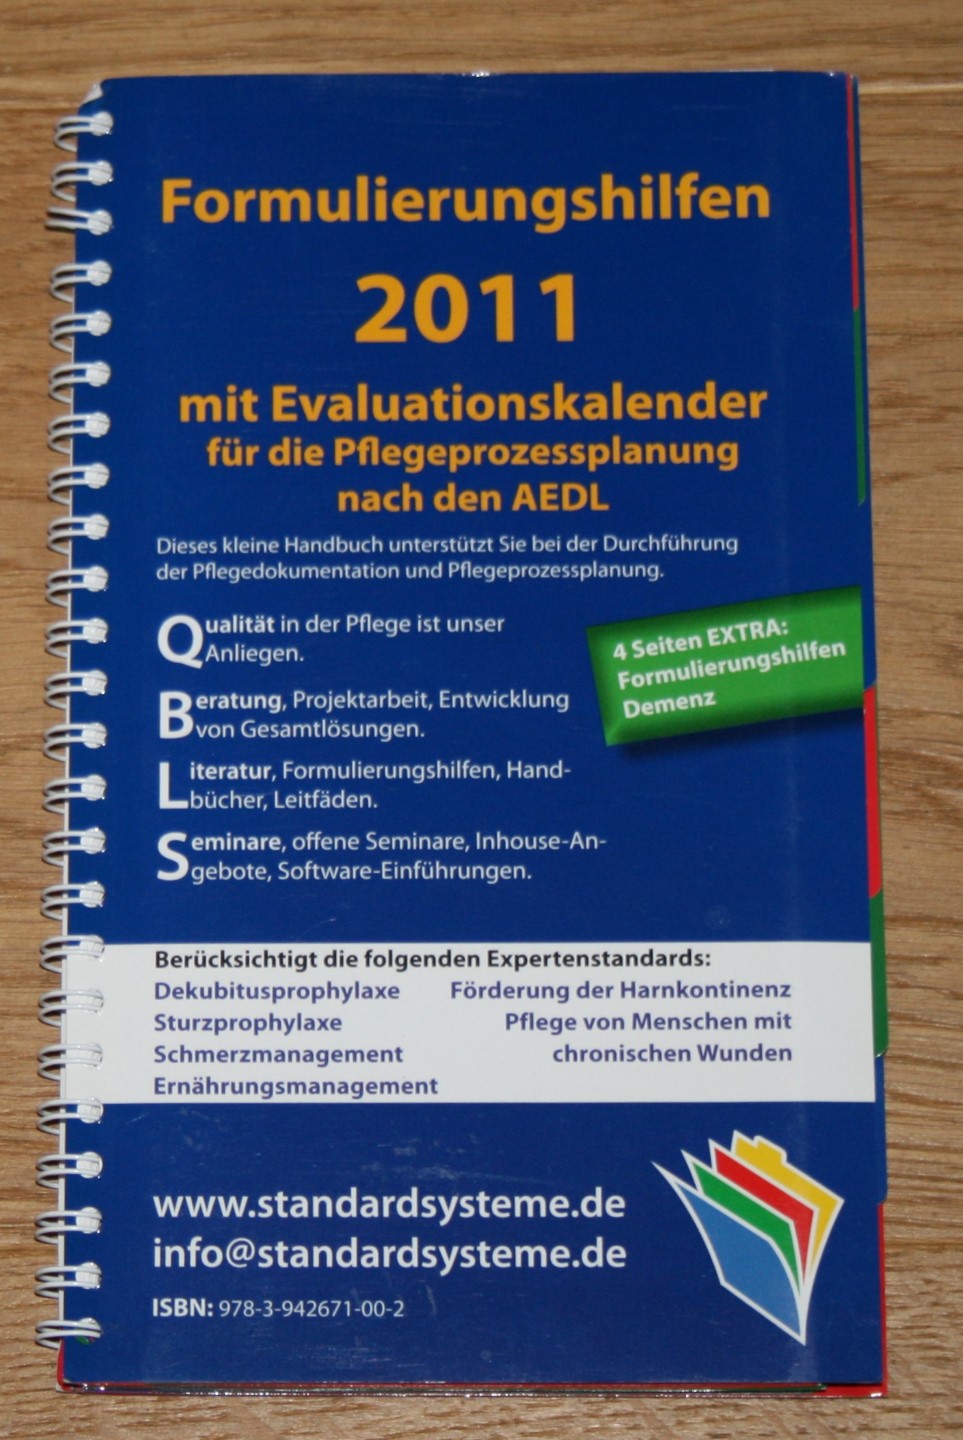 Formulierungshilfen 2011 für die Pflegeprozessplanung nach den AEDL: Mit Evaluationskalender 2011.